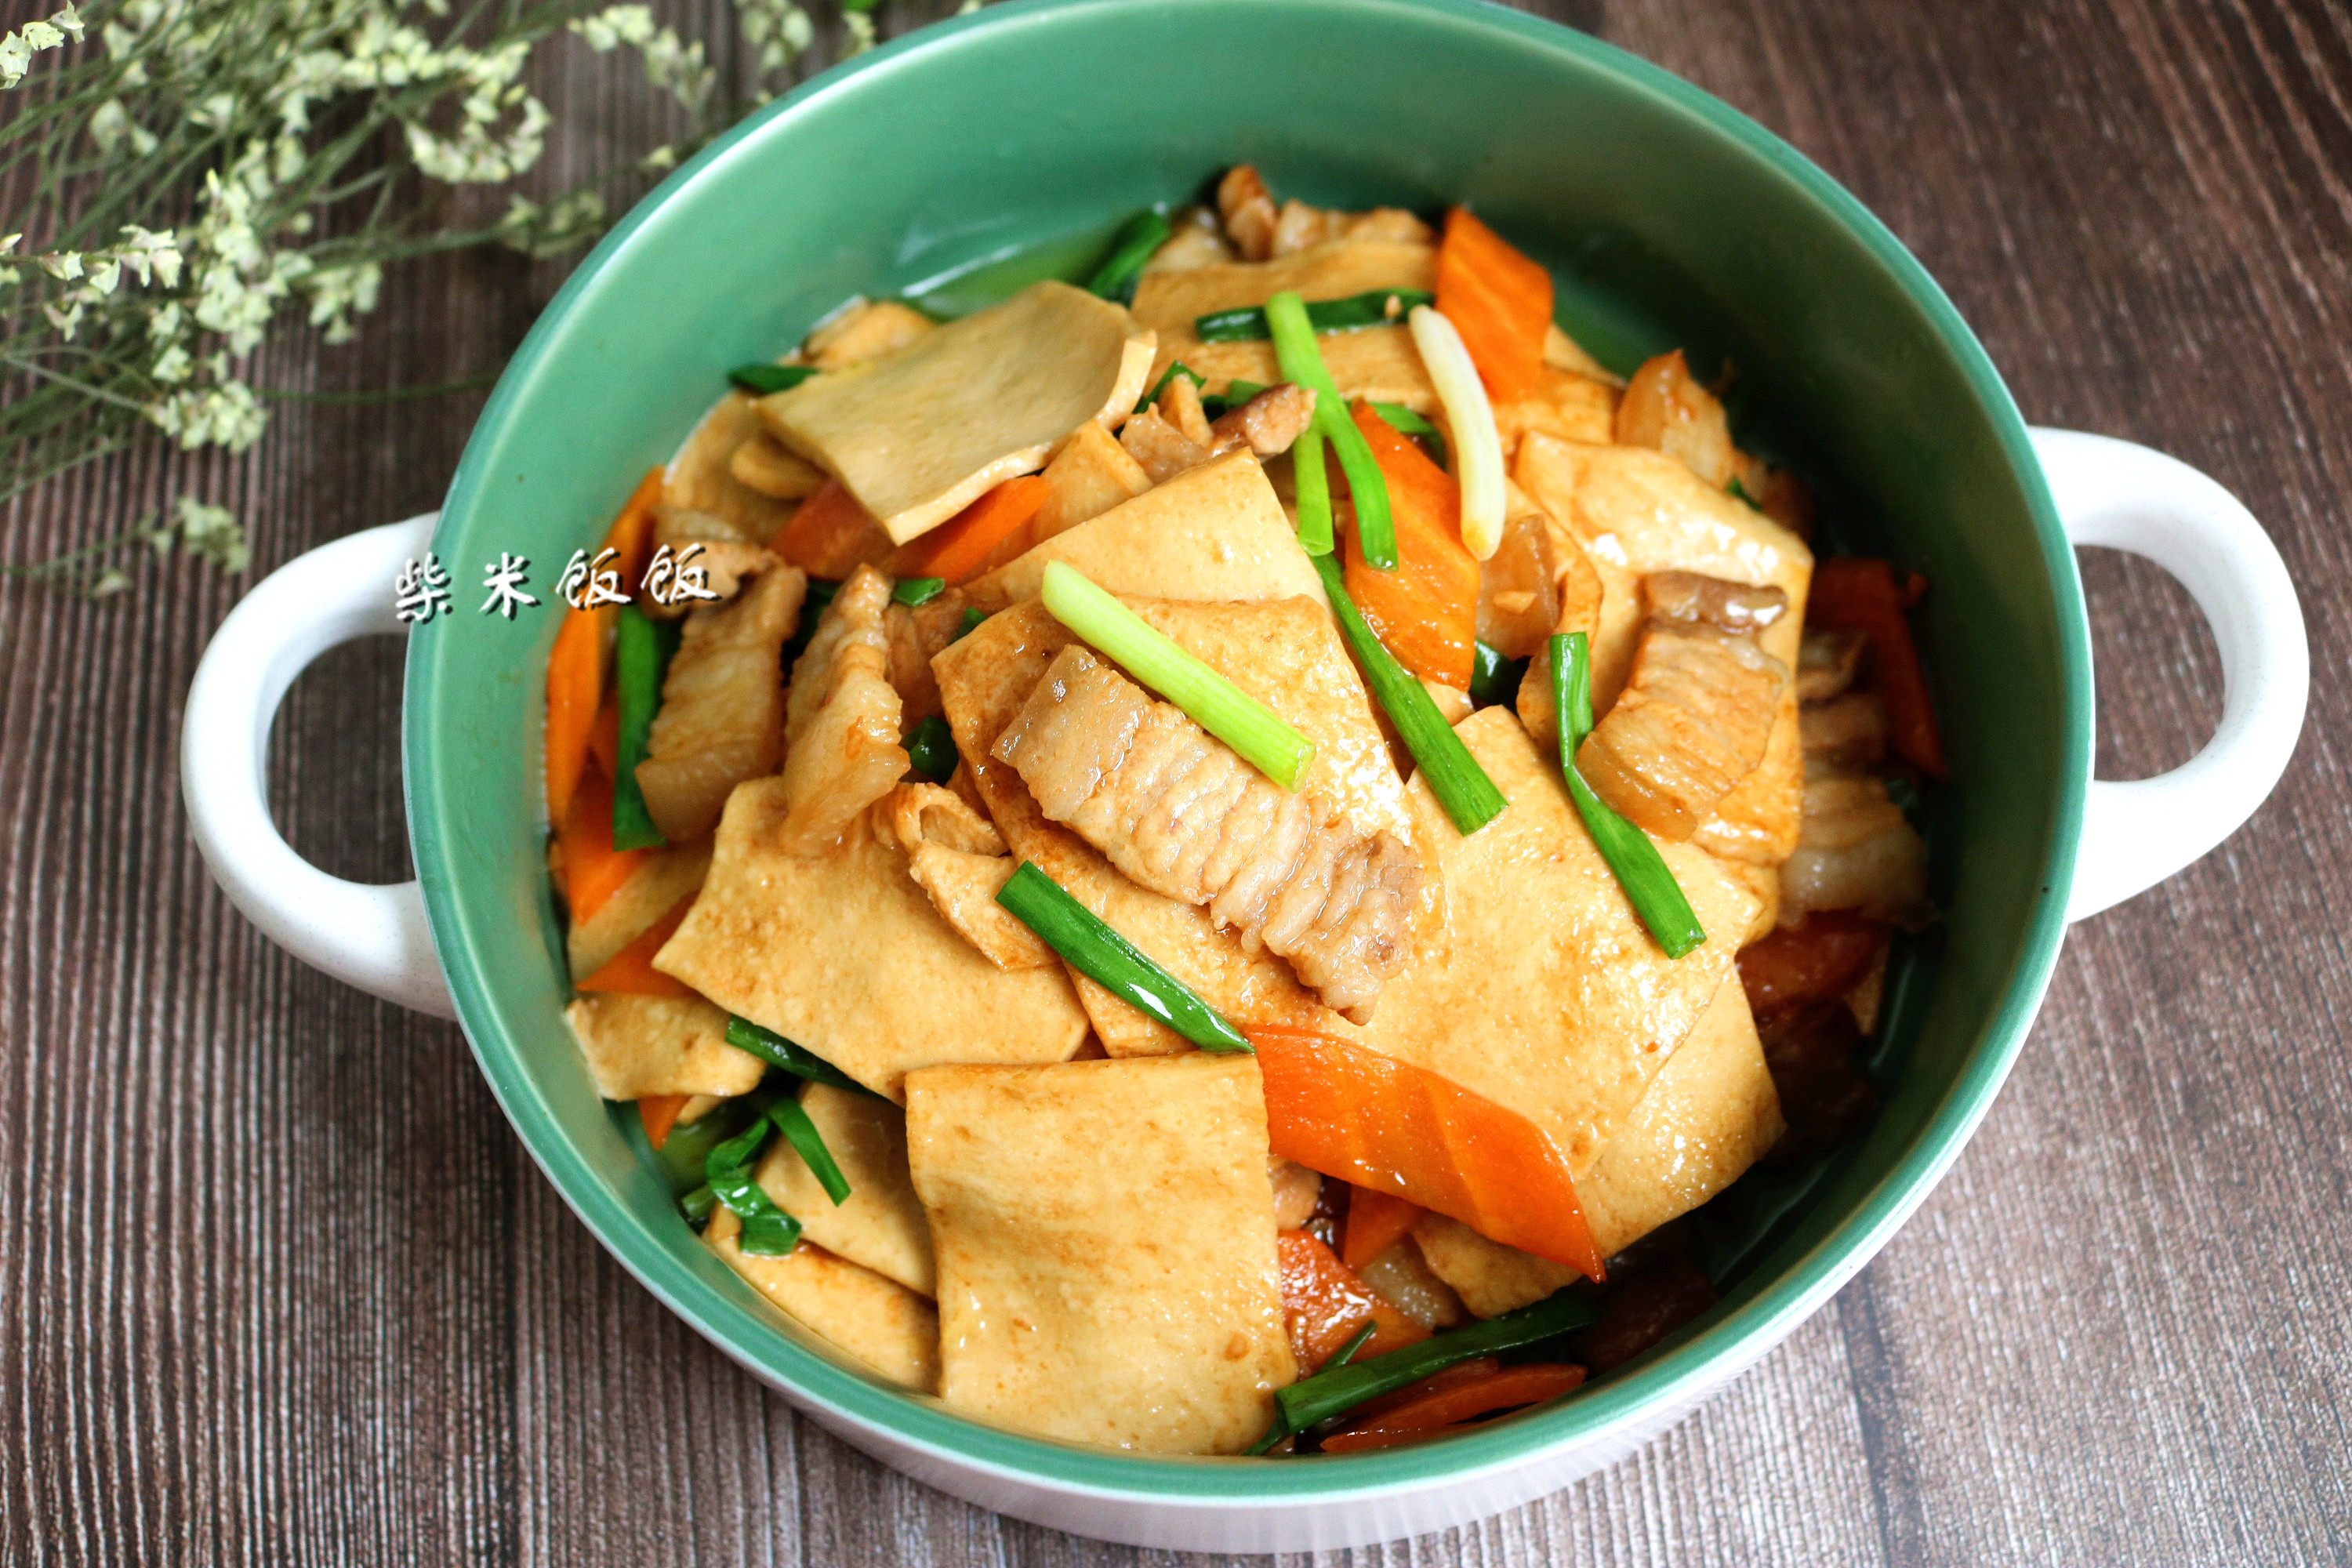 千叶豆腐的吃法很多,可以煎,炸,卤,煮,炒,既能单独成菜,也可以作为